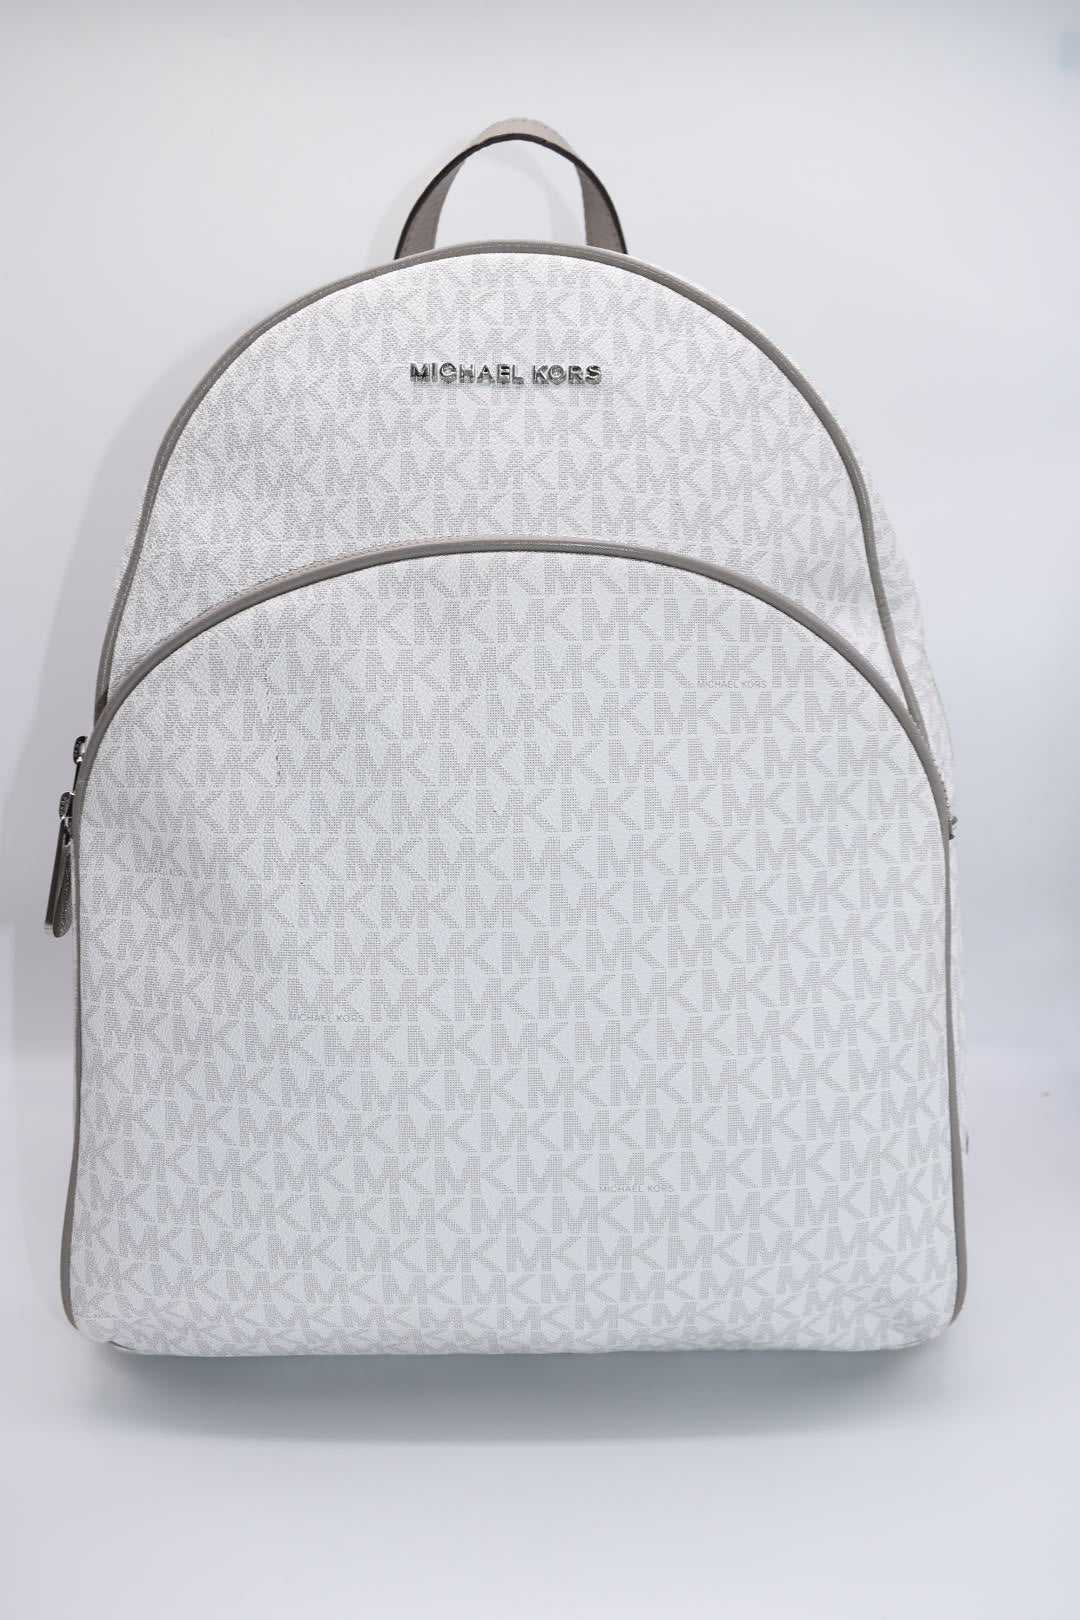 Michael Kors Abbey Large Logo Backpack